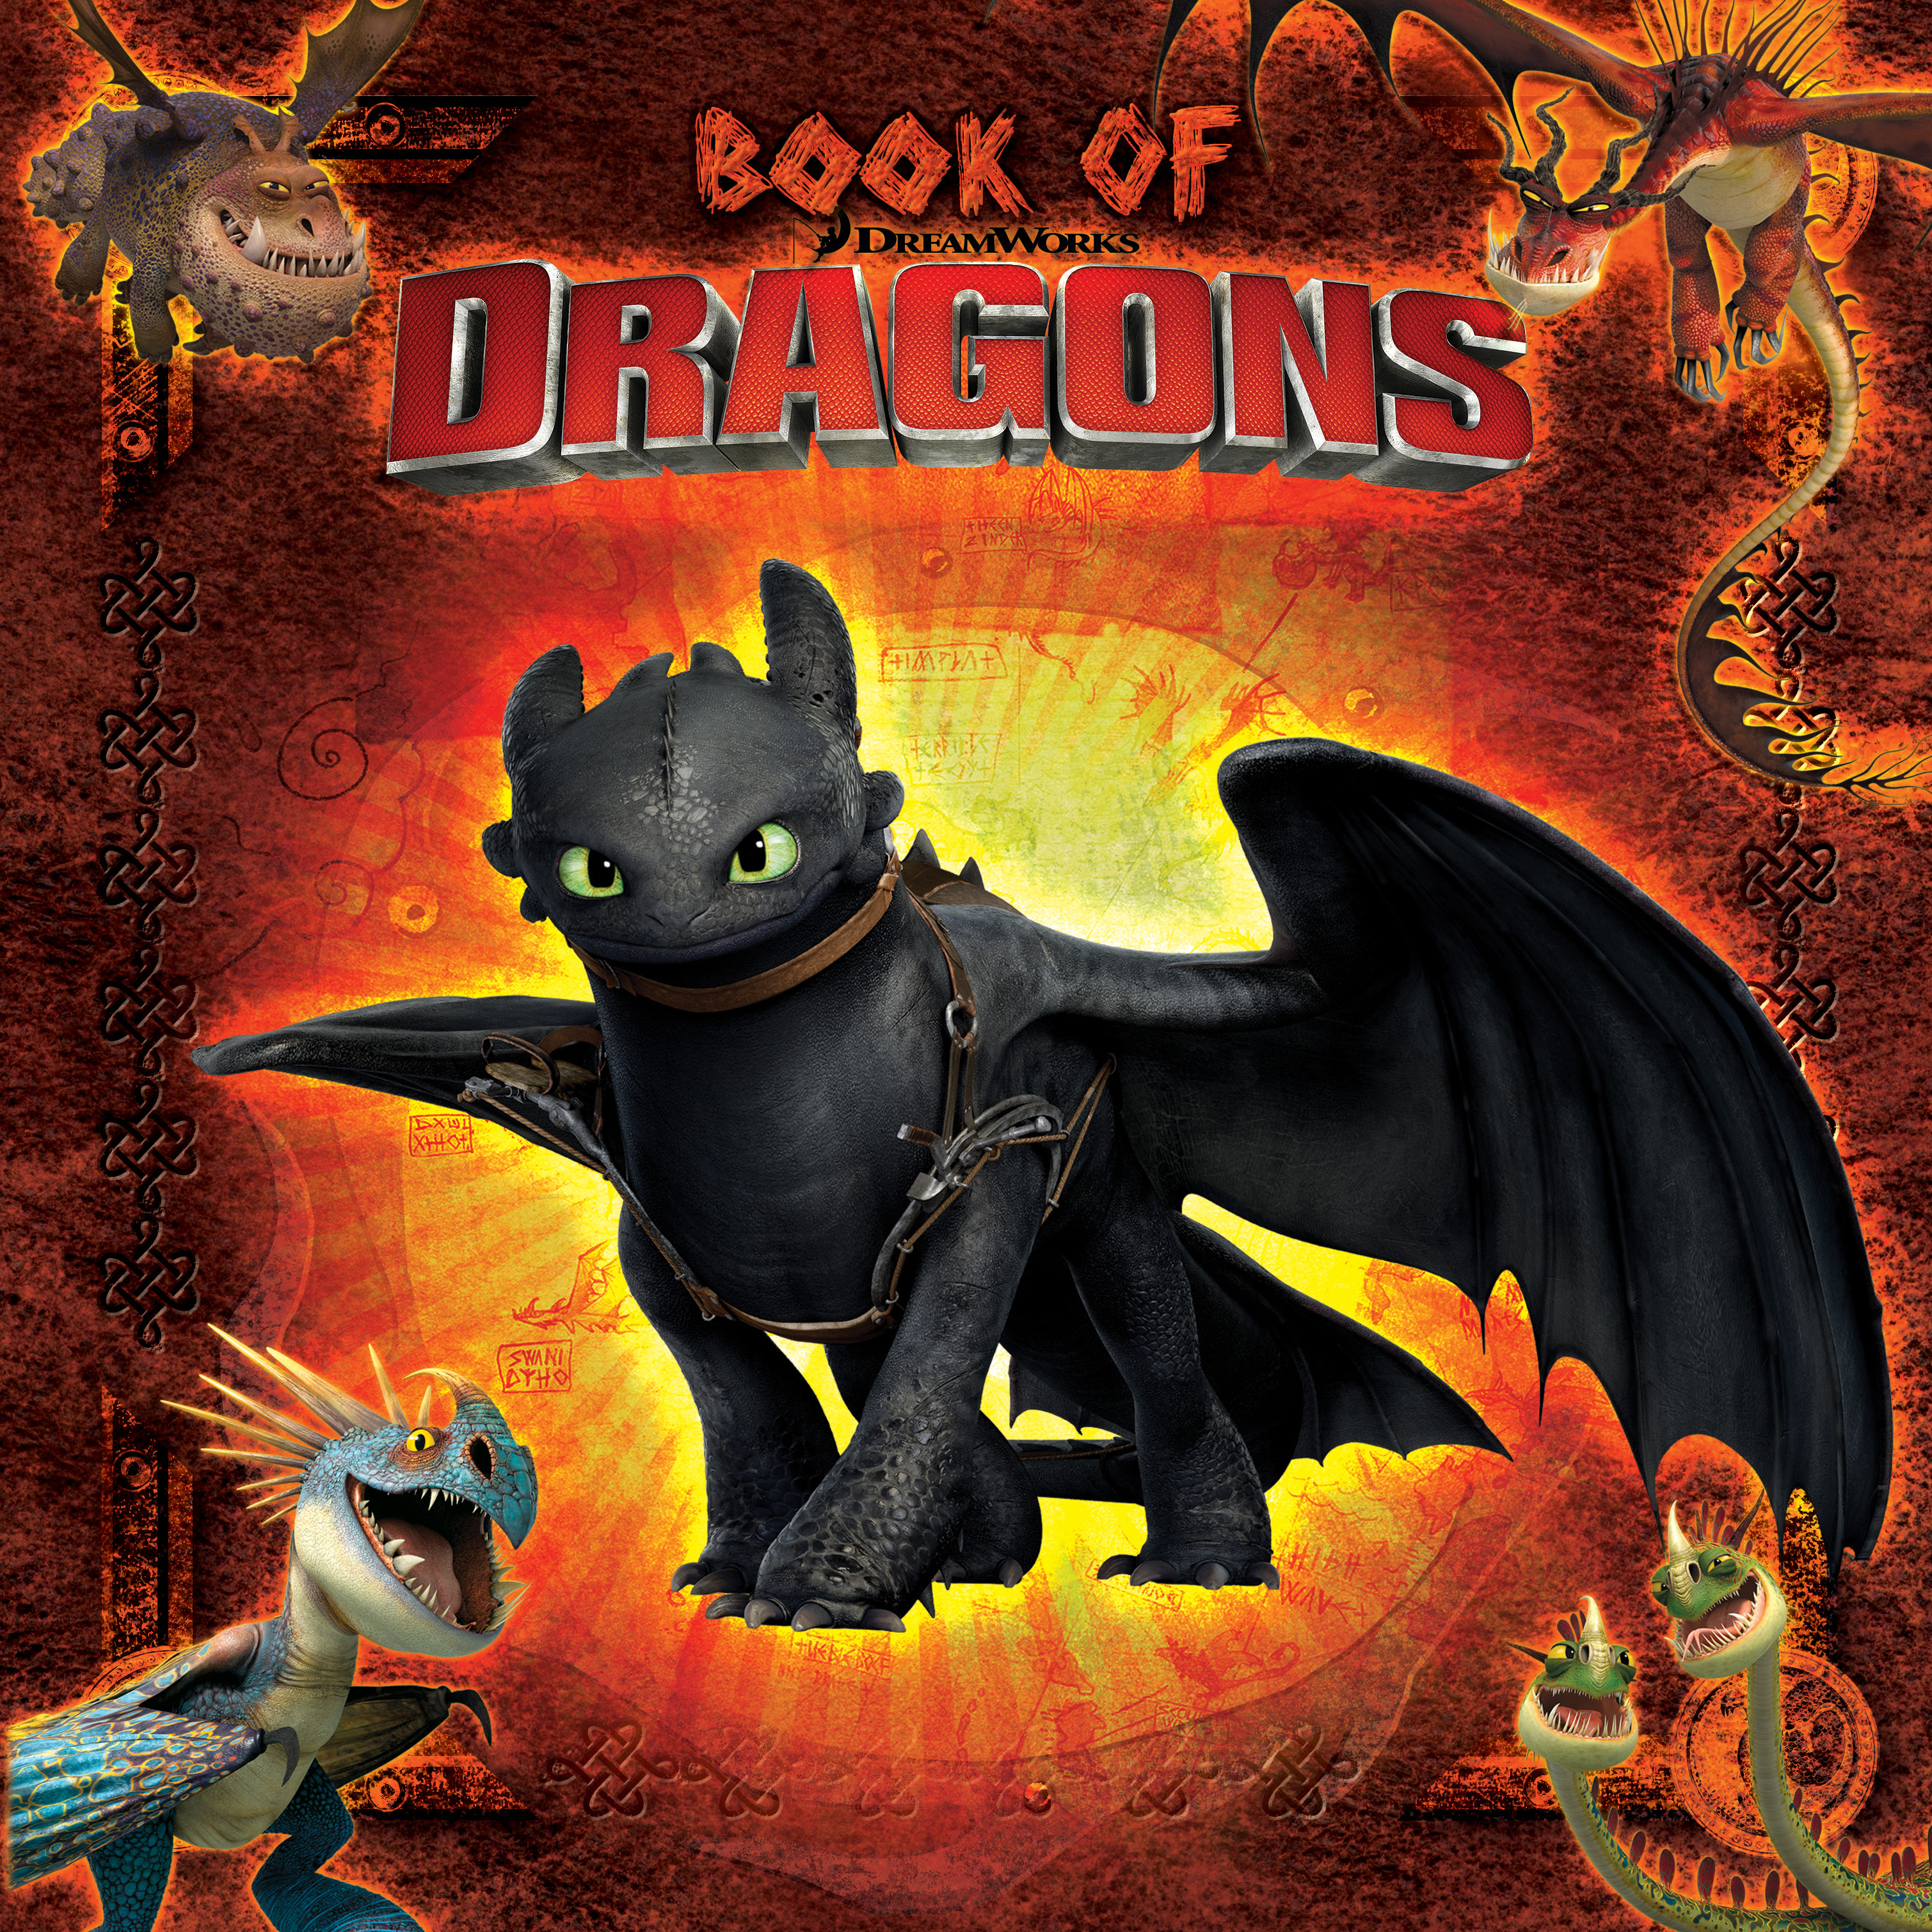 Продолжение книги драконов. Драконы Олуха книга драконов. Книга драконов из как приручить дракона обложка. Драконы из книги драконов. Как приручить дракона книга.